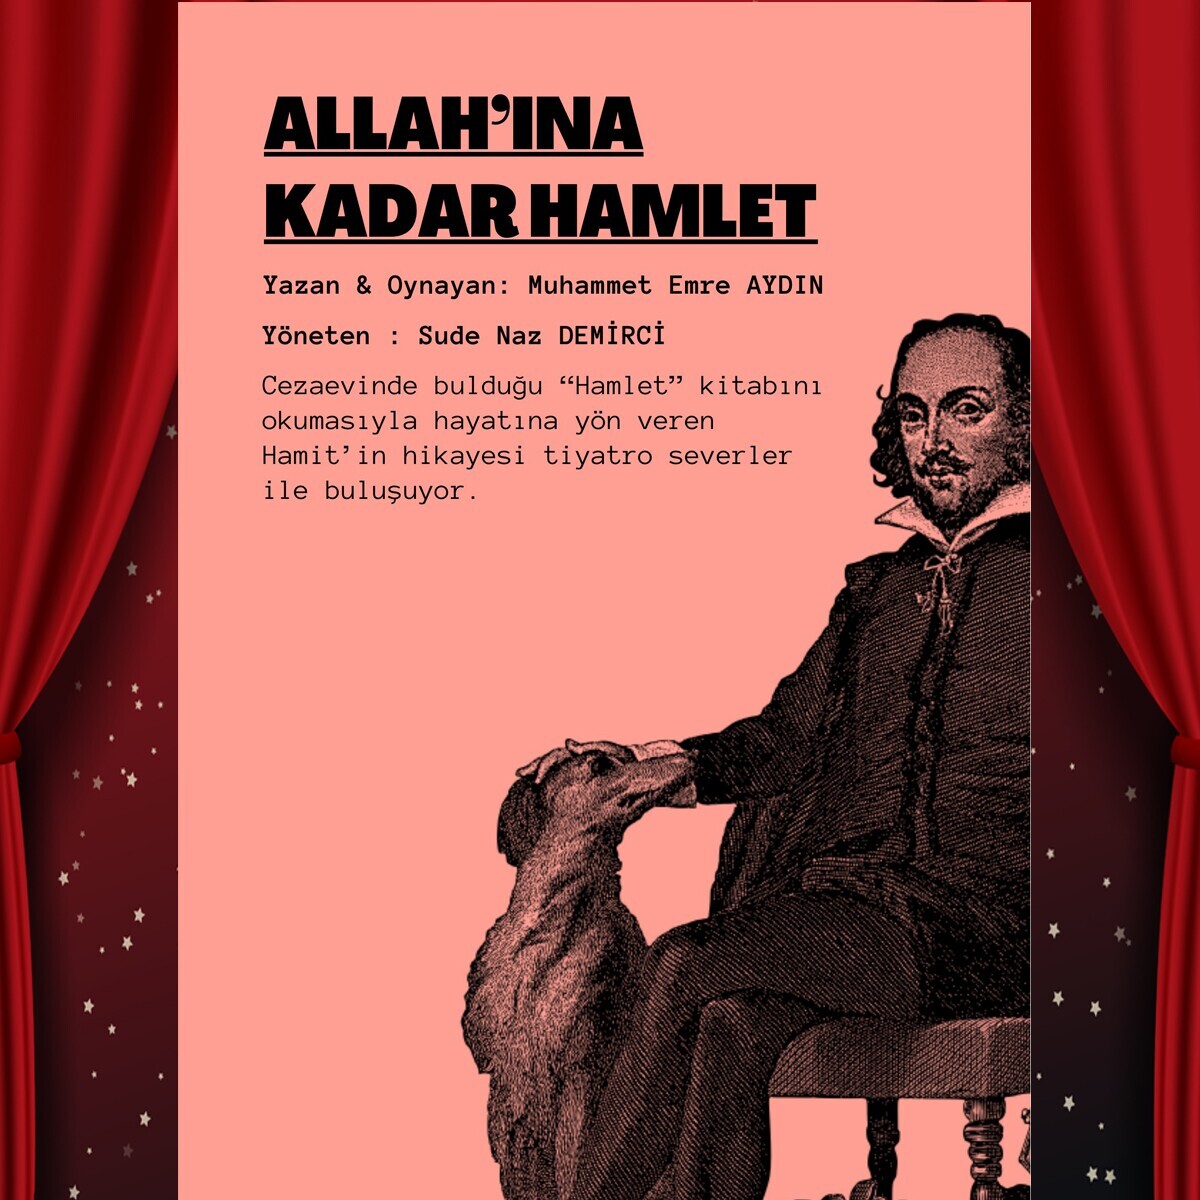 'Allah'ına Kadar Hamlet' Tiyatro Bileti